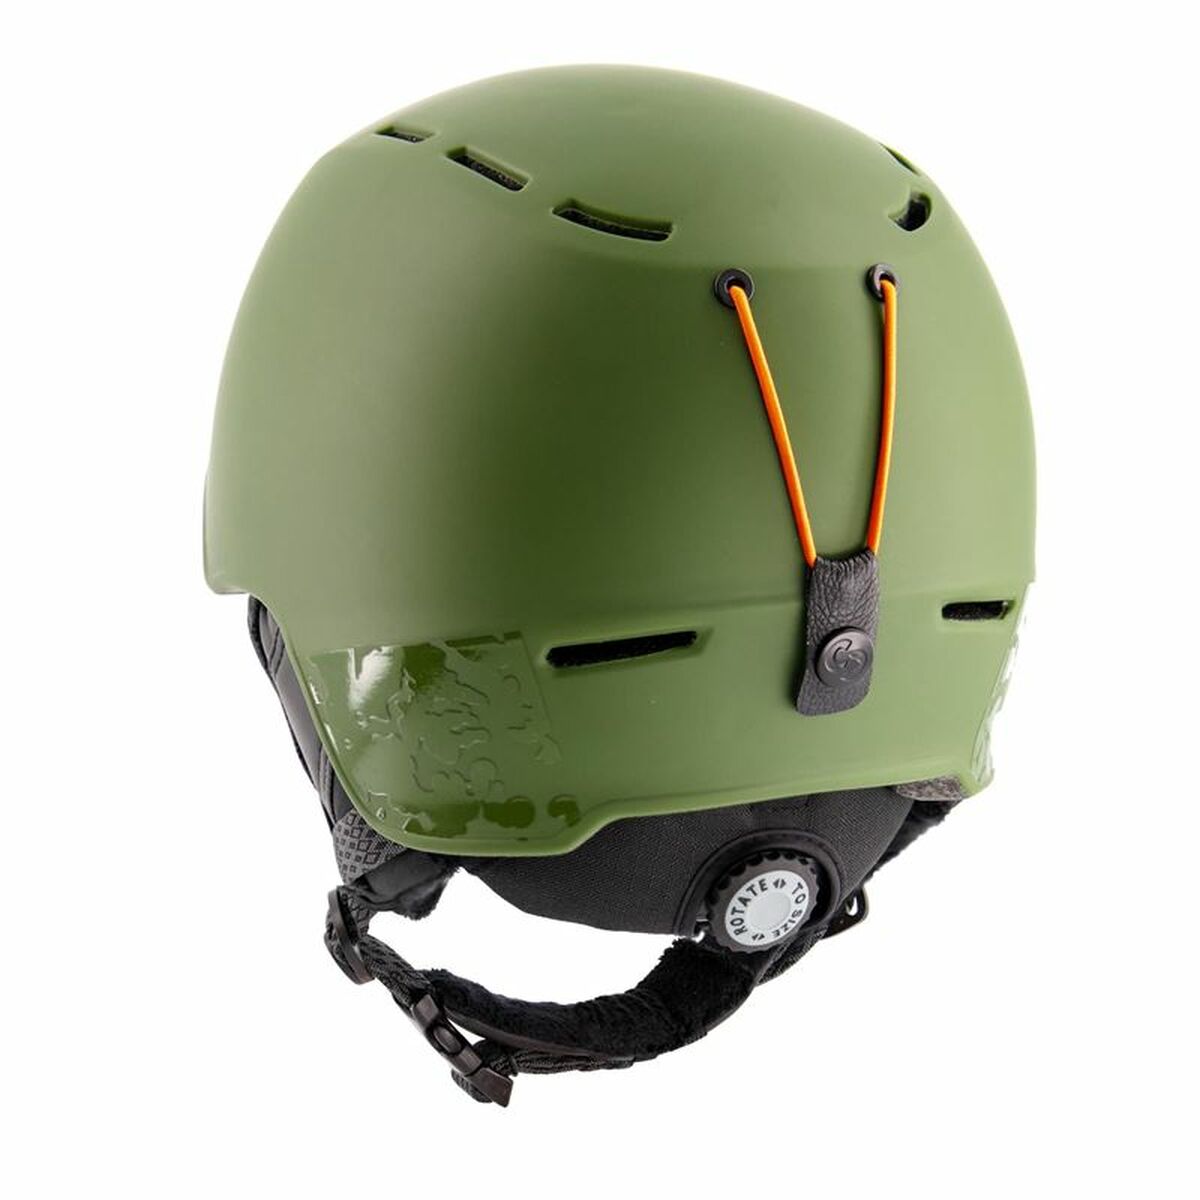 Ski Helmet Sinner Fortune Green Unisex 55-58 cm